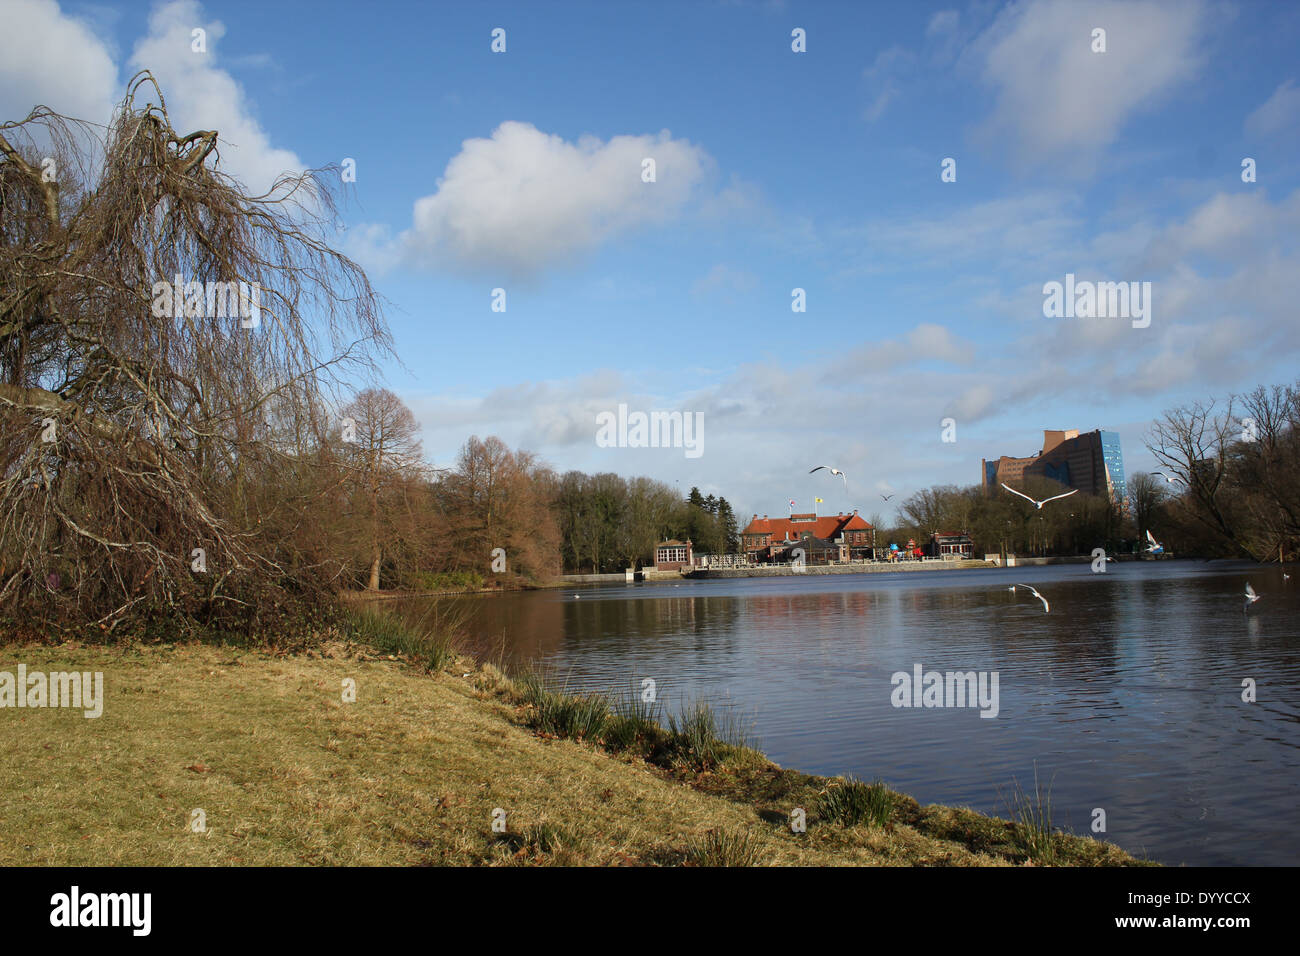 Stadspark ou Parc de la ville de la ville de Groningen (Pays-Bas) en hiver, le lac au premier plan Banque D'Images